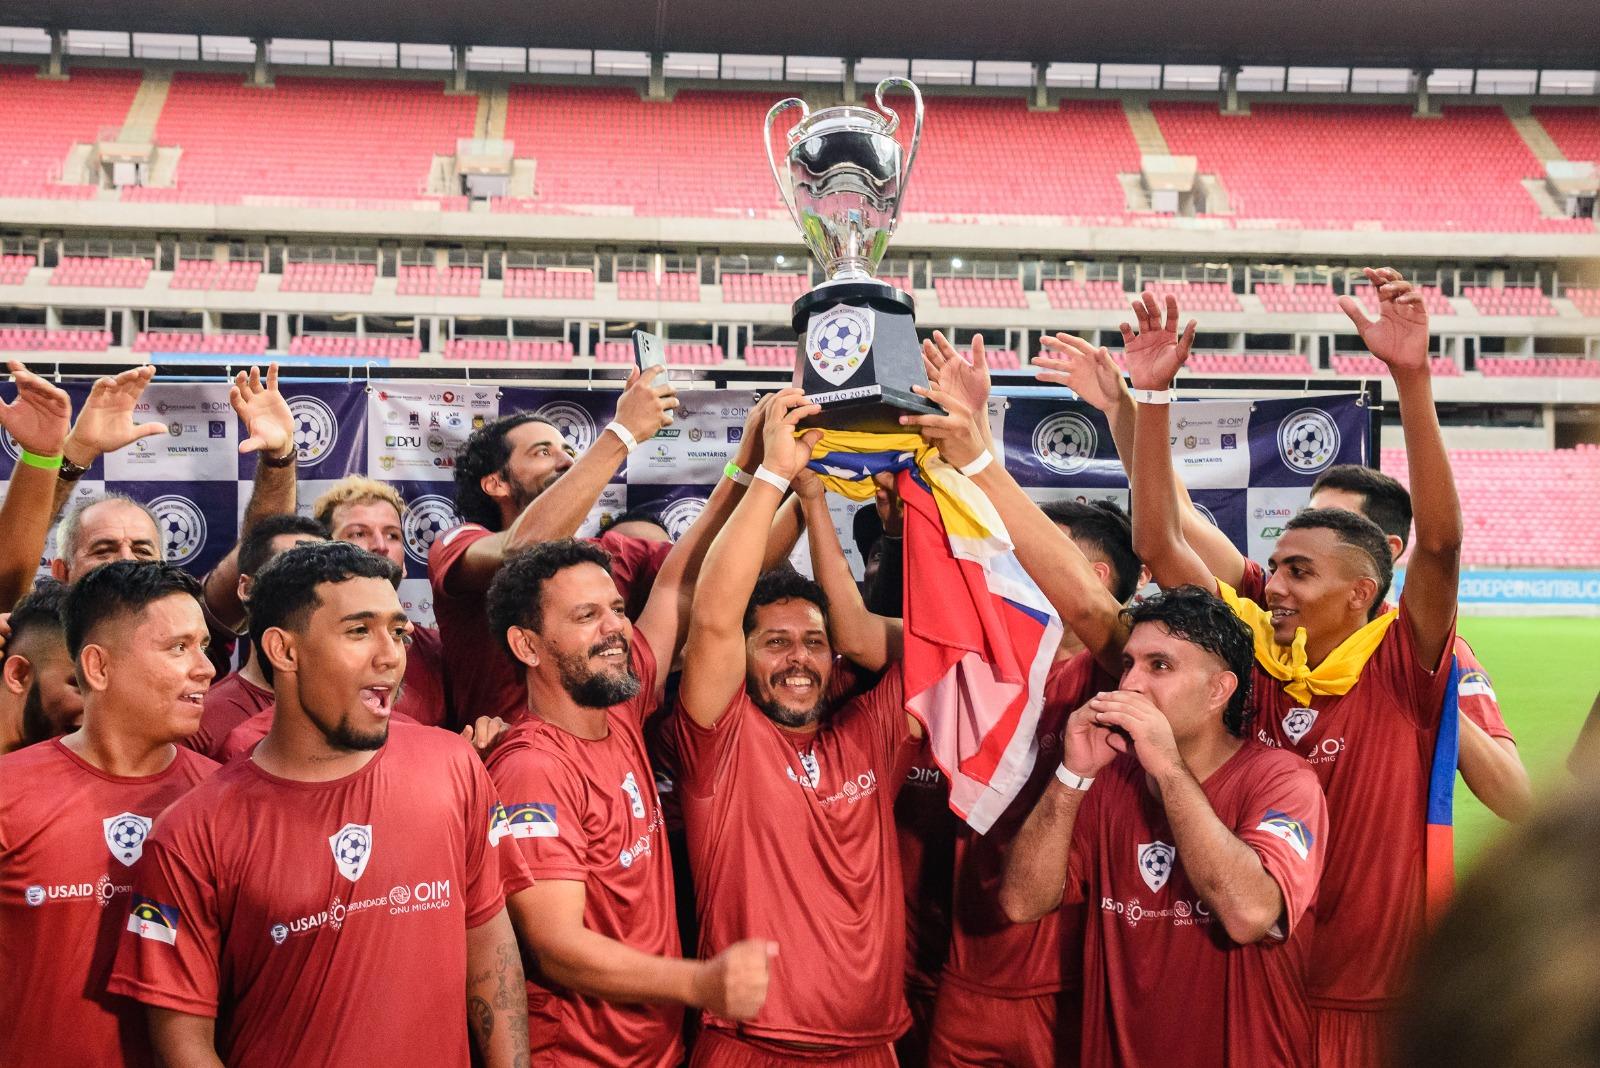 Time da Venezuela vence a Copa Pernambucana dos Migrantes e Refugiados em disputa contra Benin, Senegal e Angola